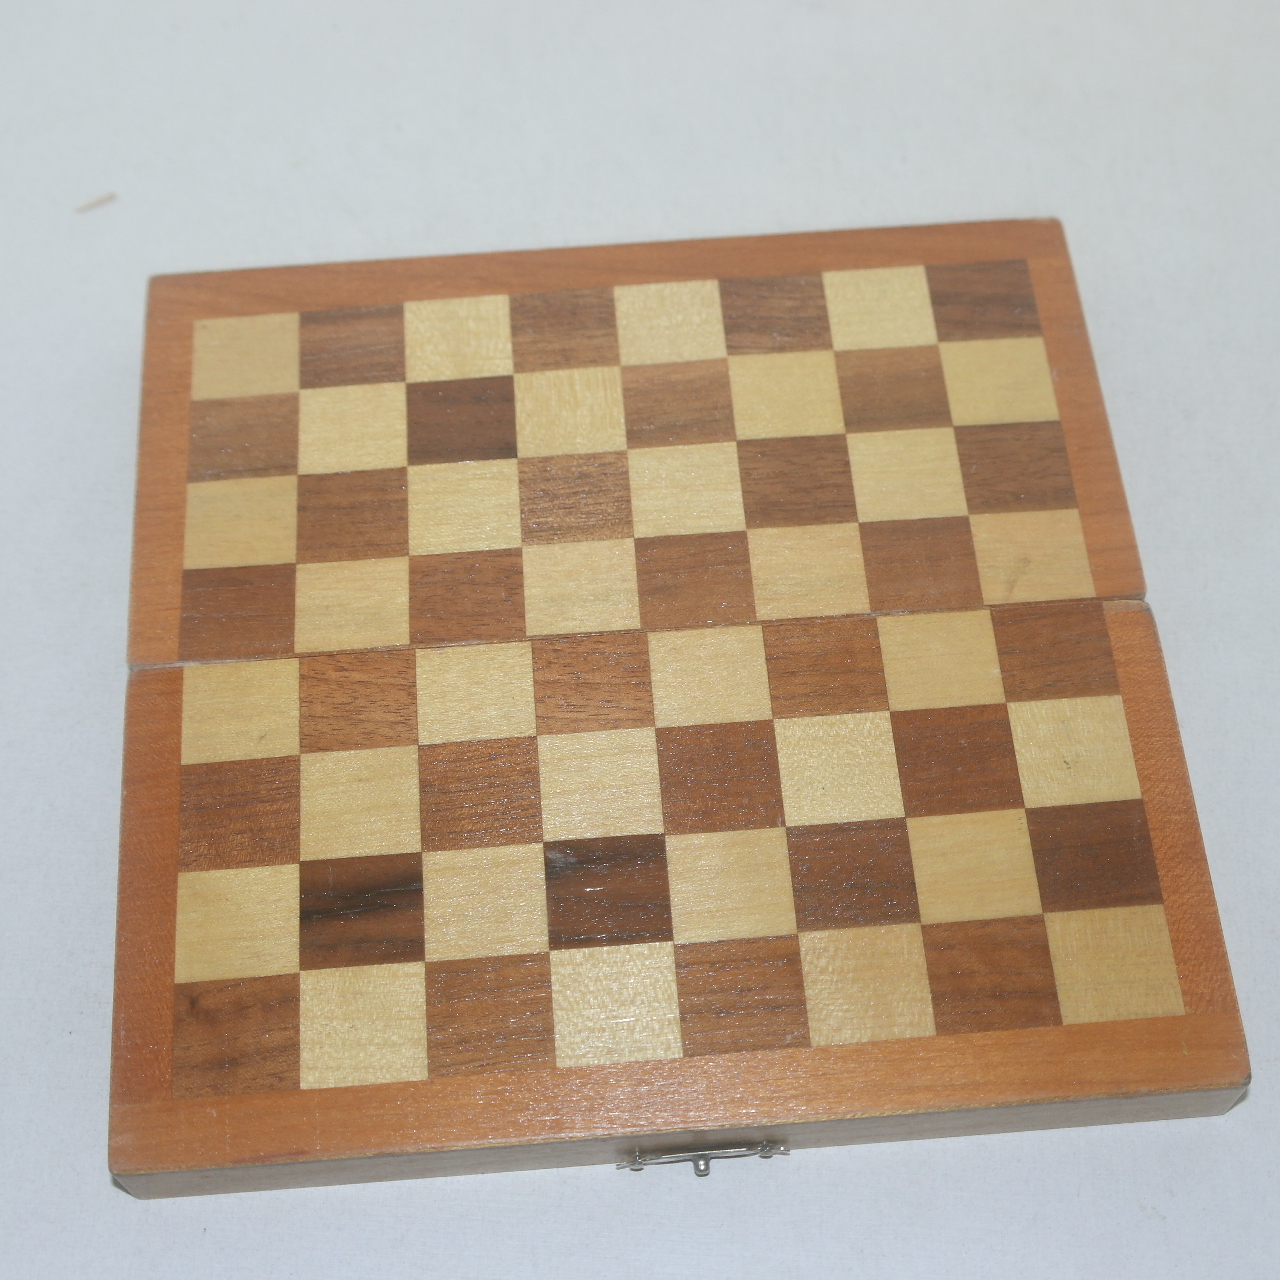 나무판으로된 체스셋트